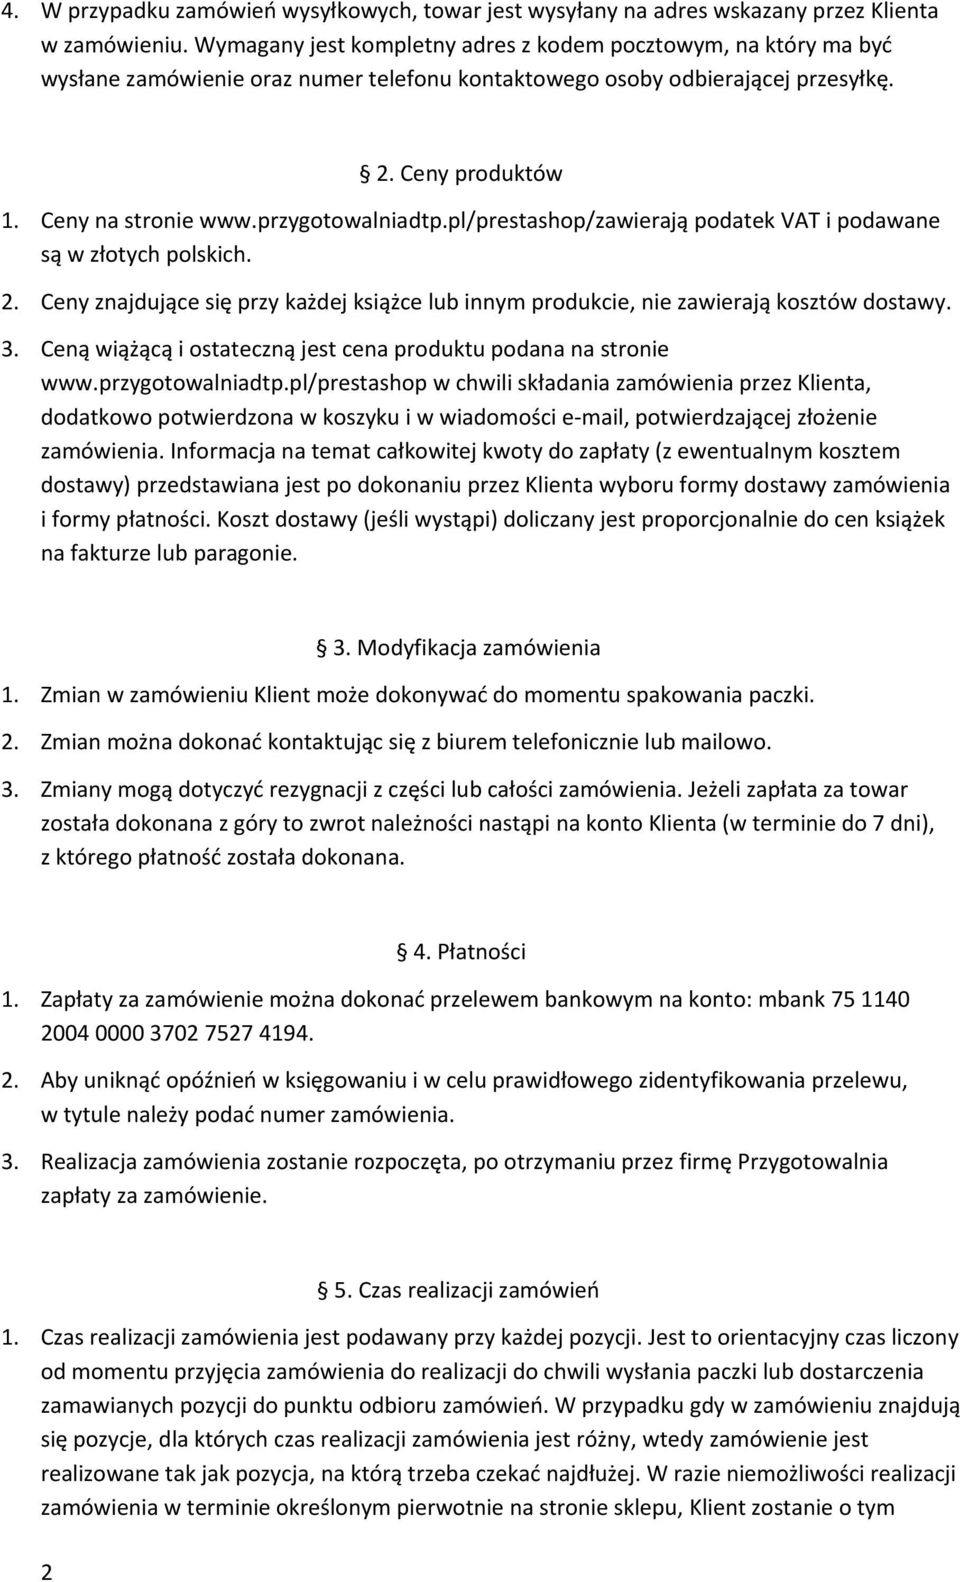 przygotowalniadtp.pl/prestashop/zawierają podatek VAT i podawane są w złotych polskich. 2. Ceny znajdujące się przy każdej książce lub innym produkcie, nie zawierają kosztów dostawy. 3.